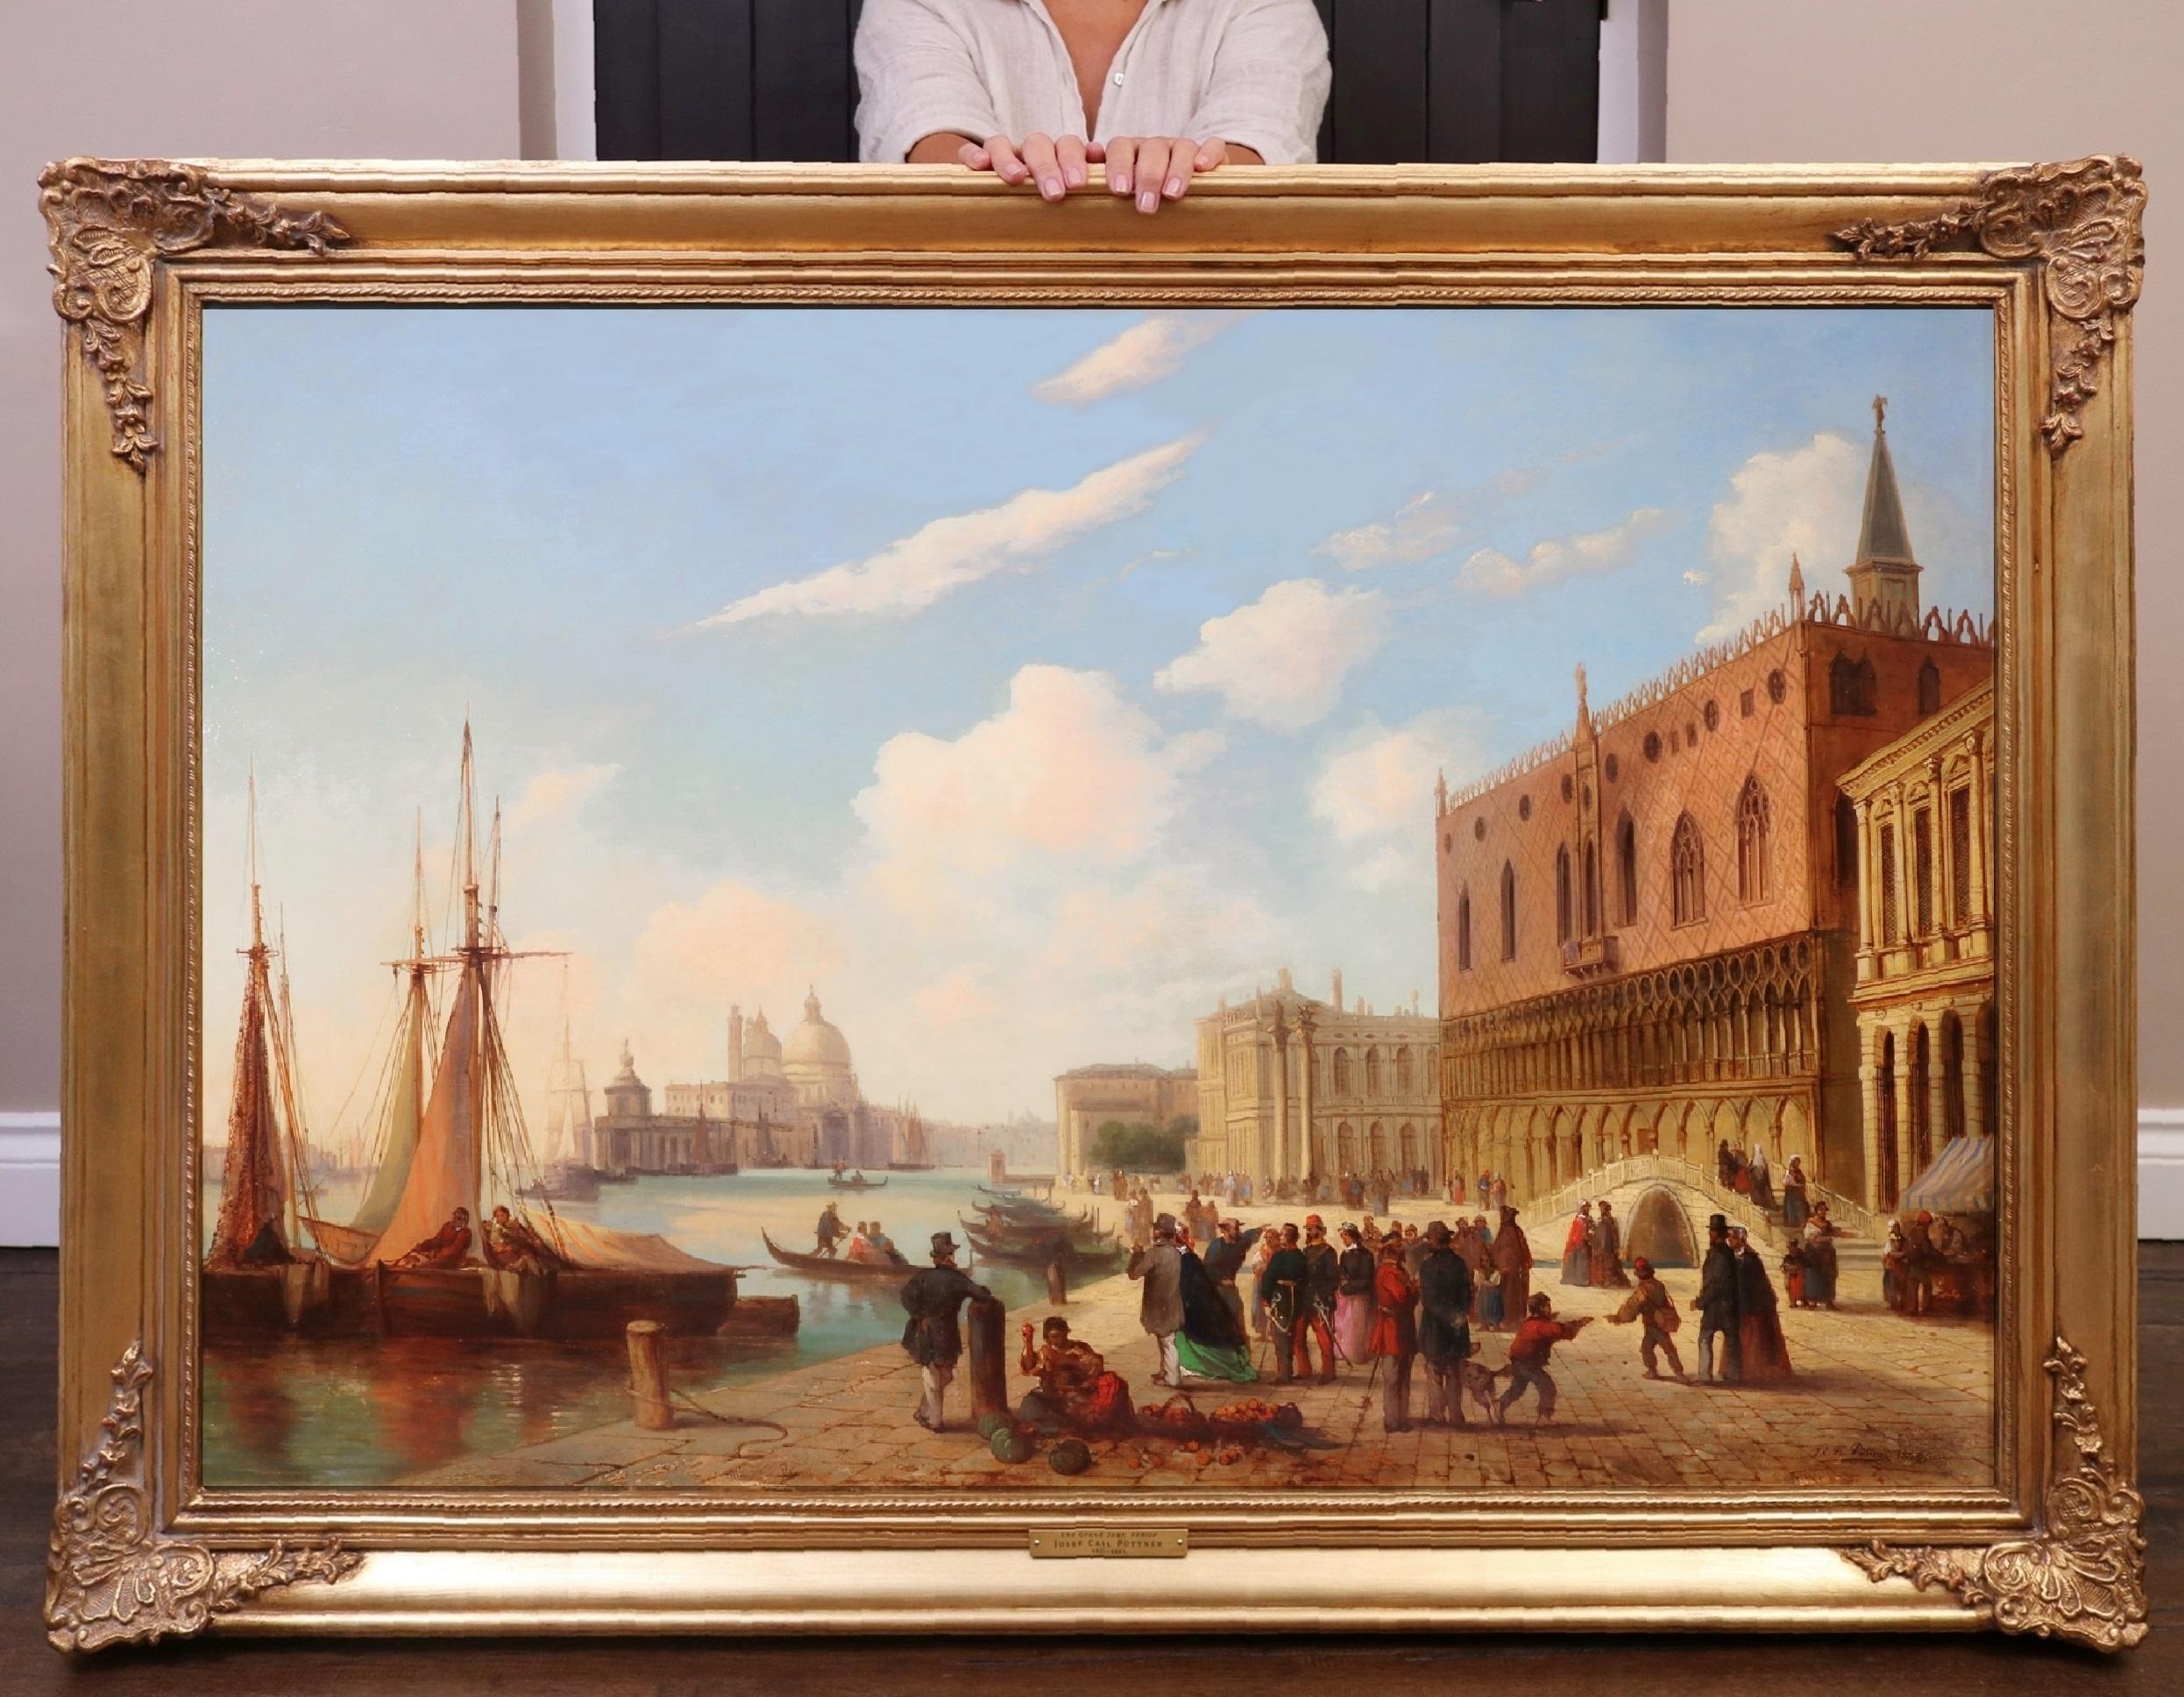 Josef Carl Puttner Figurative Painting – The Grand Tour Venice - Großes venezianisches Ölgemälde des 19. Jahrhunderts, Ducal Palace